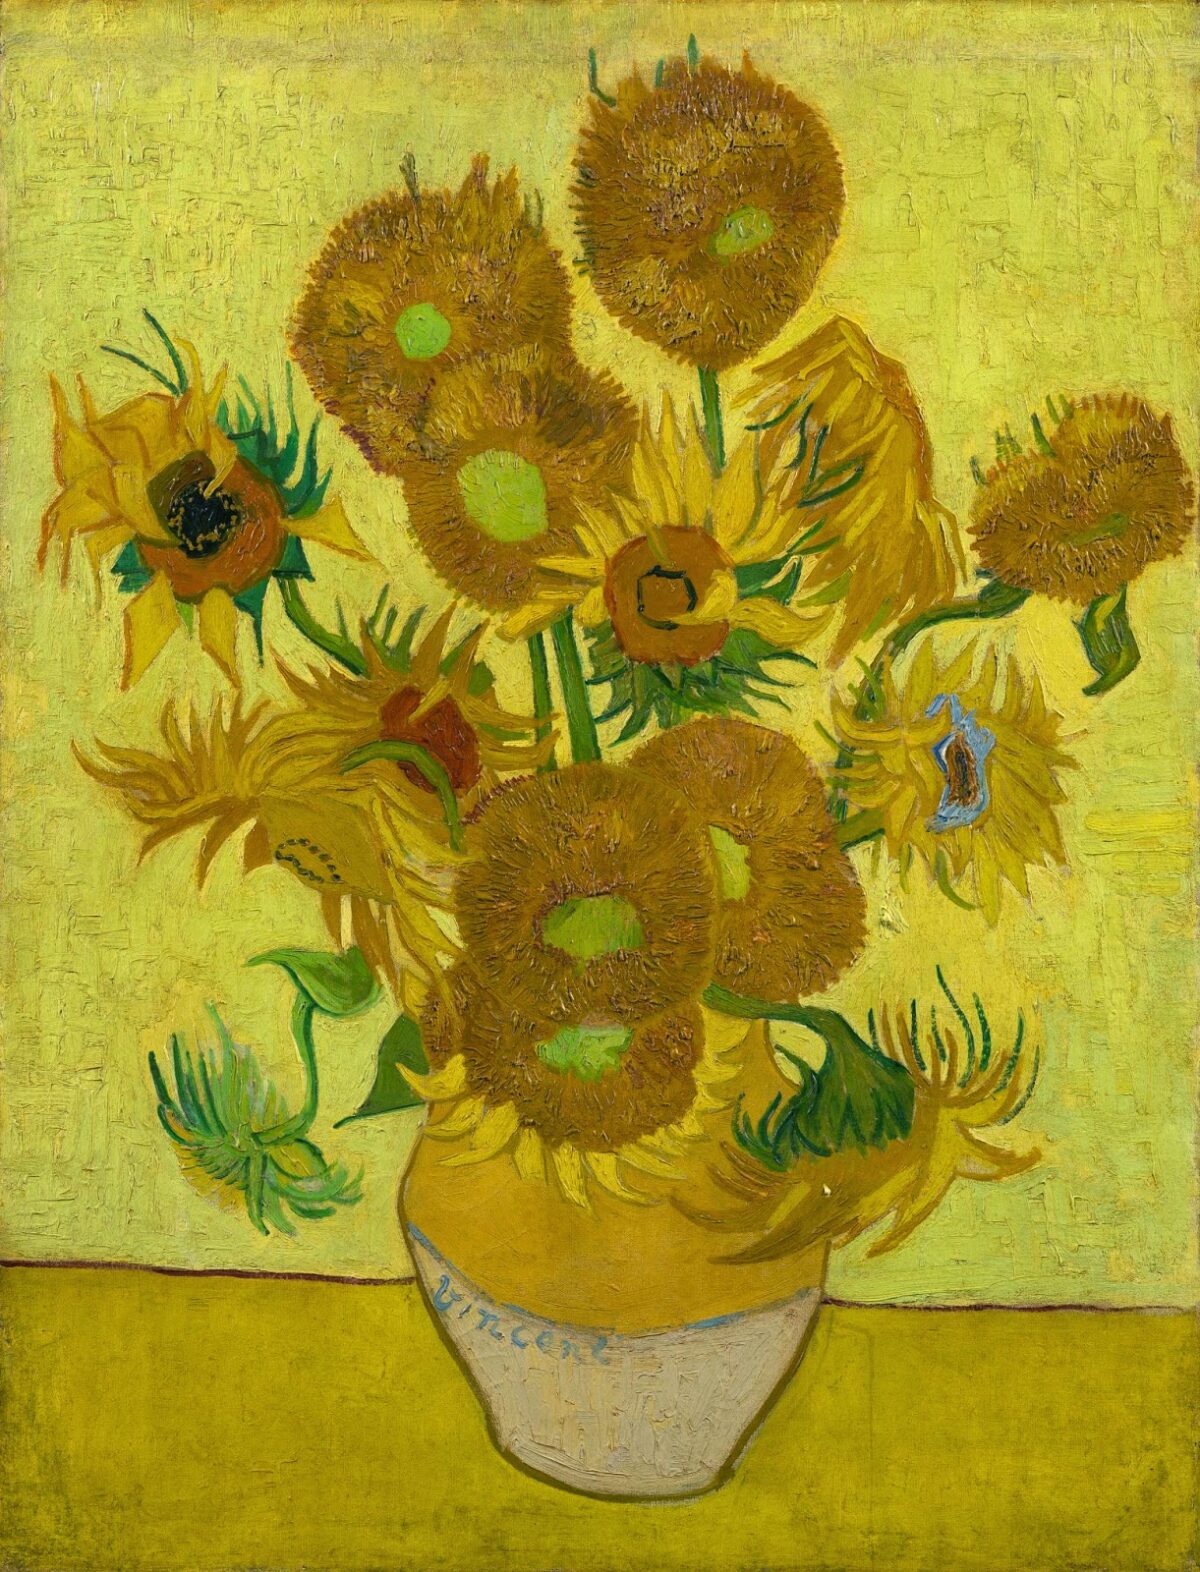 ¿Por qué se están marchitando los girasoles de Van Gogh?